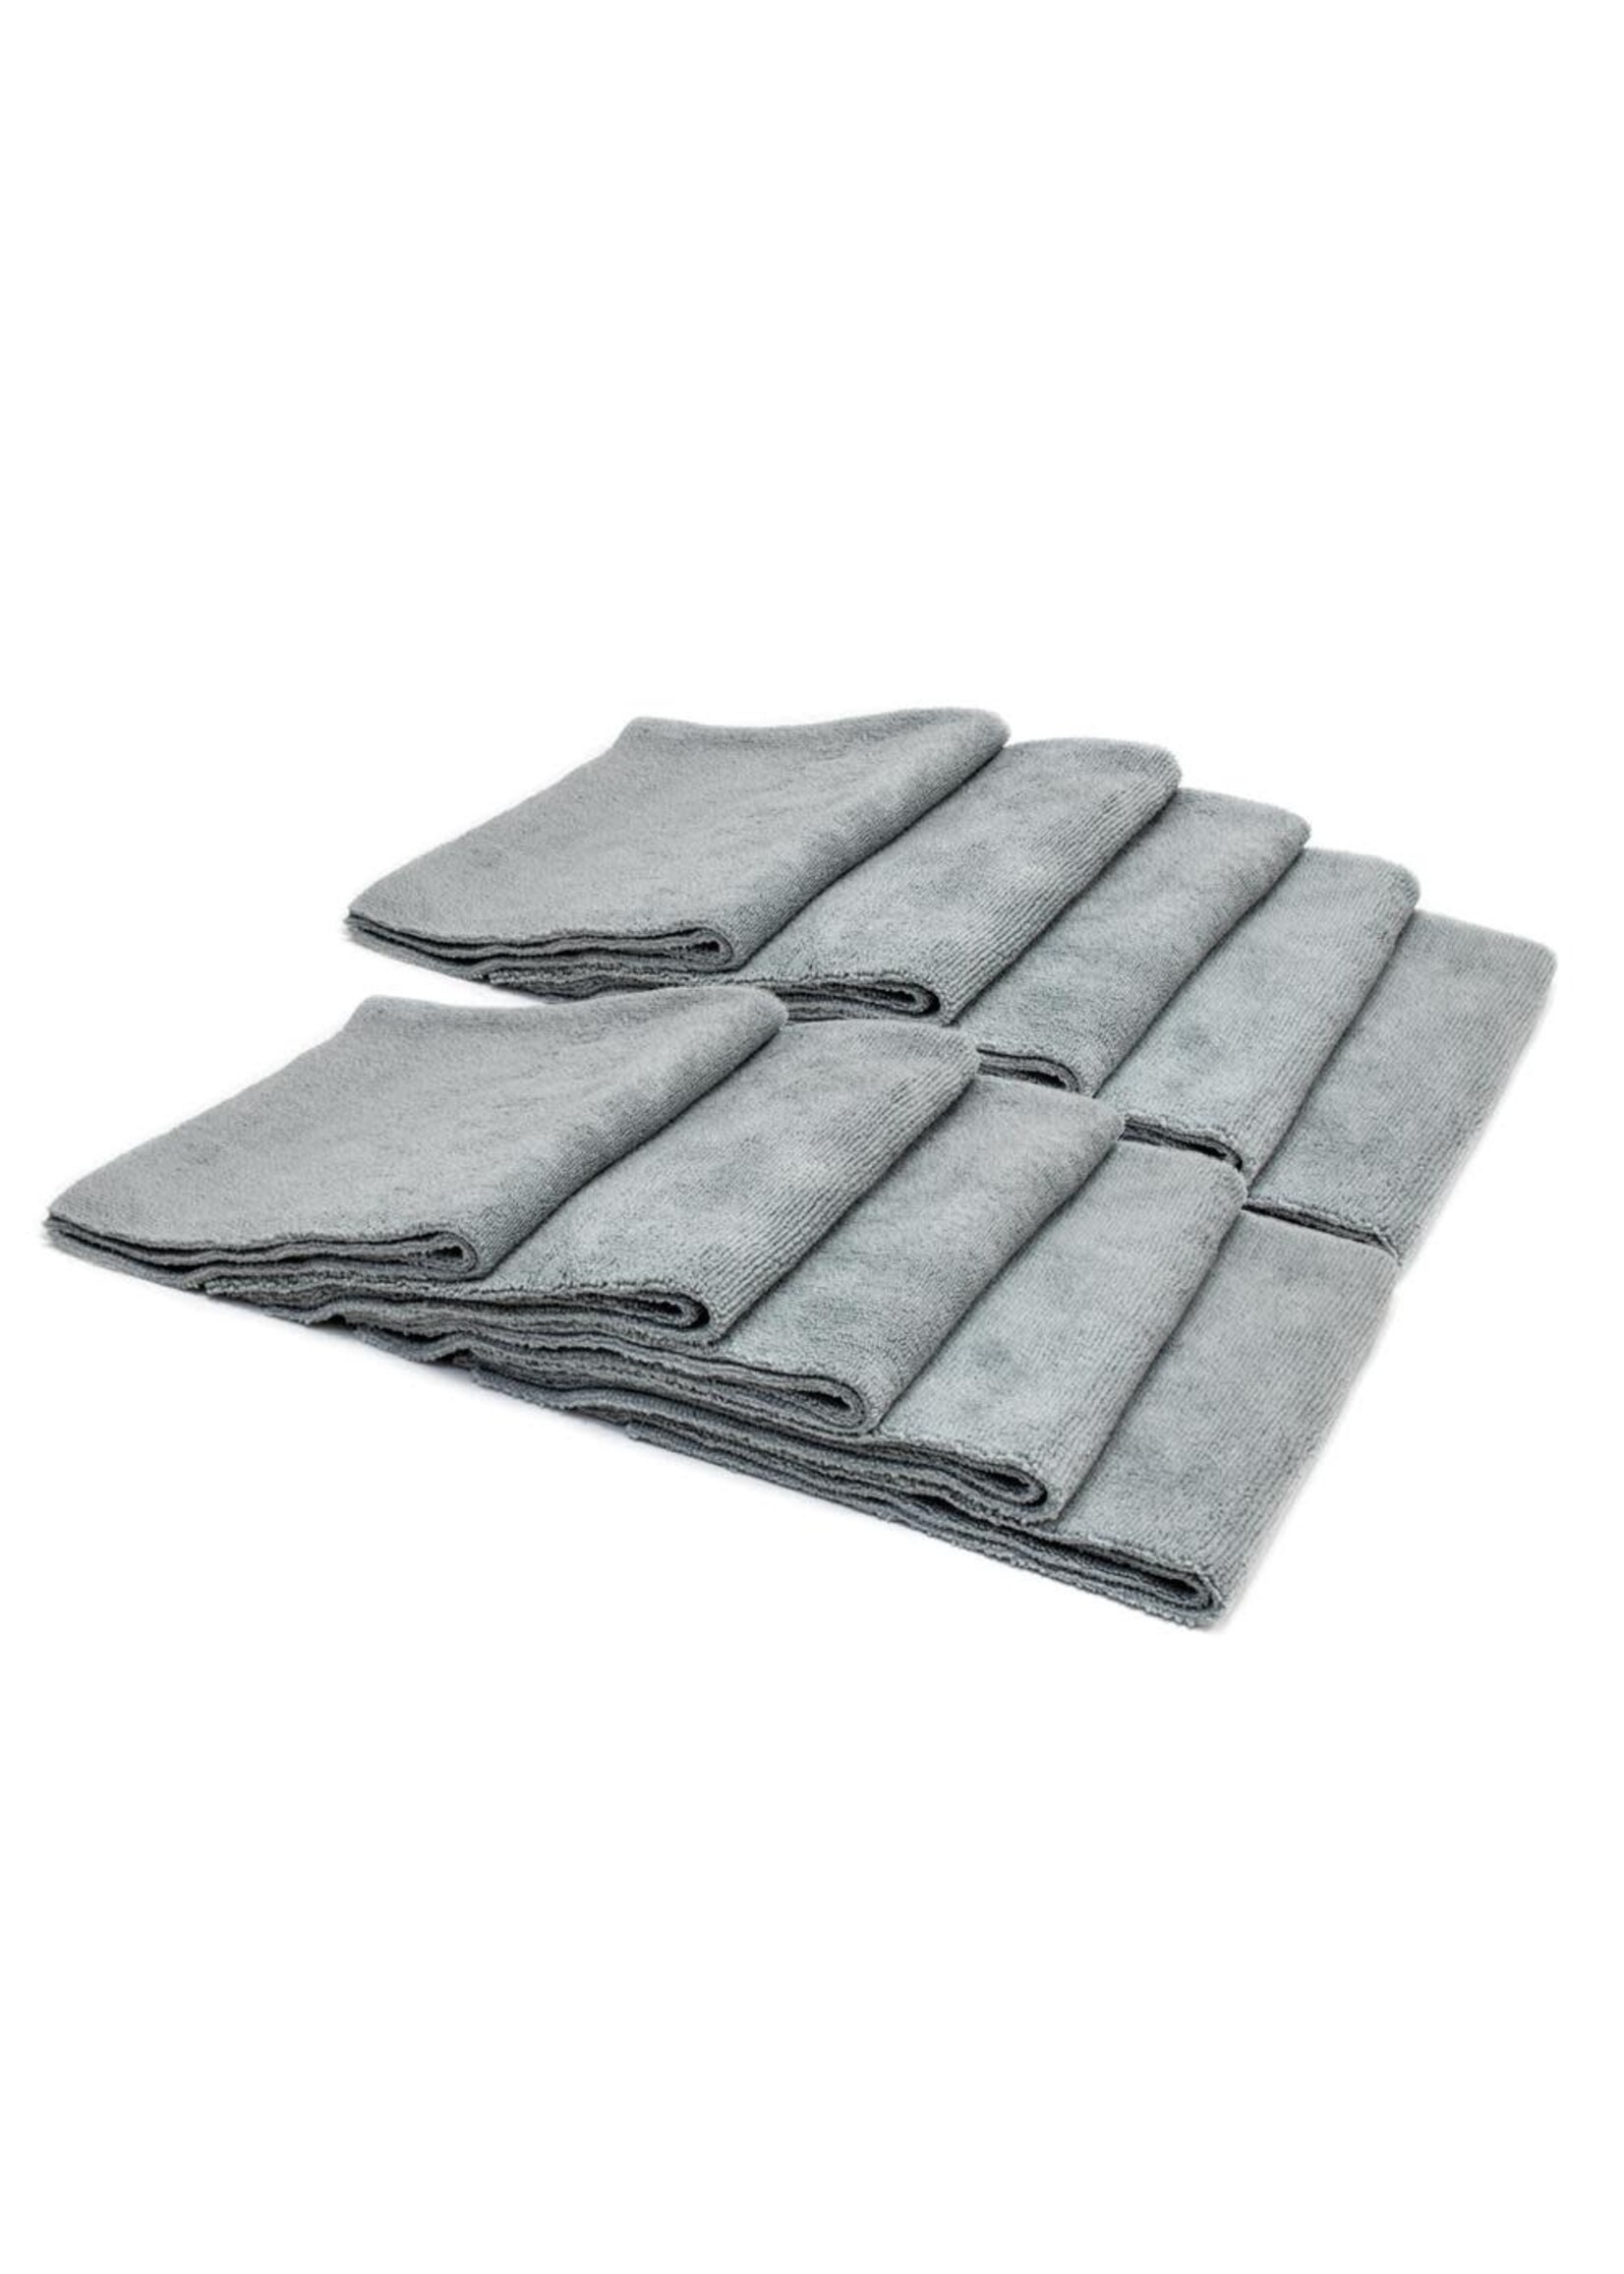 Autofiber Mr. Everything Premium Towel - 10 Pack